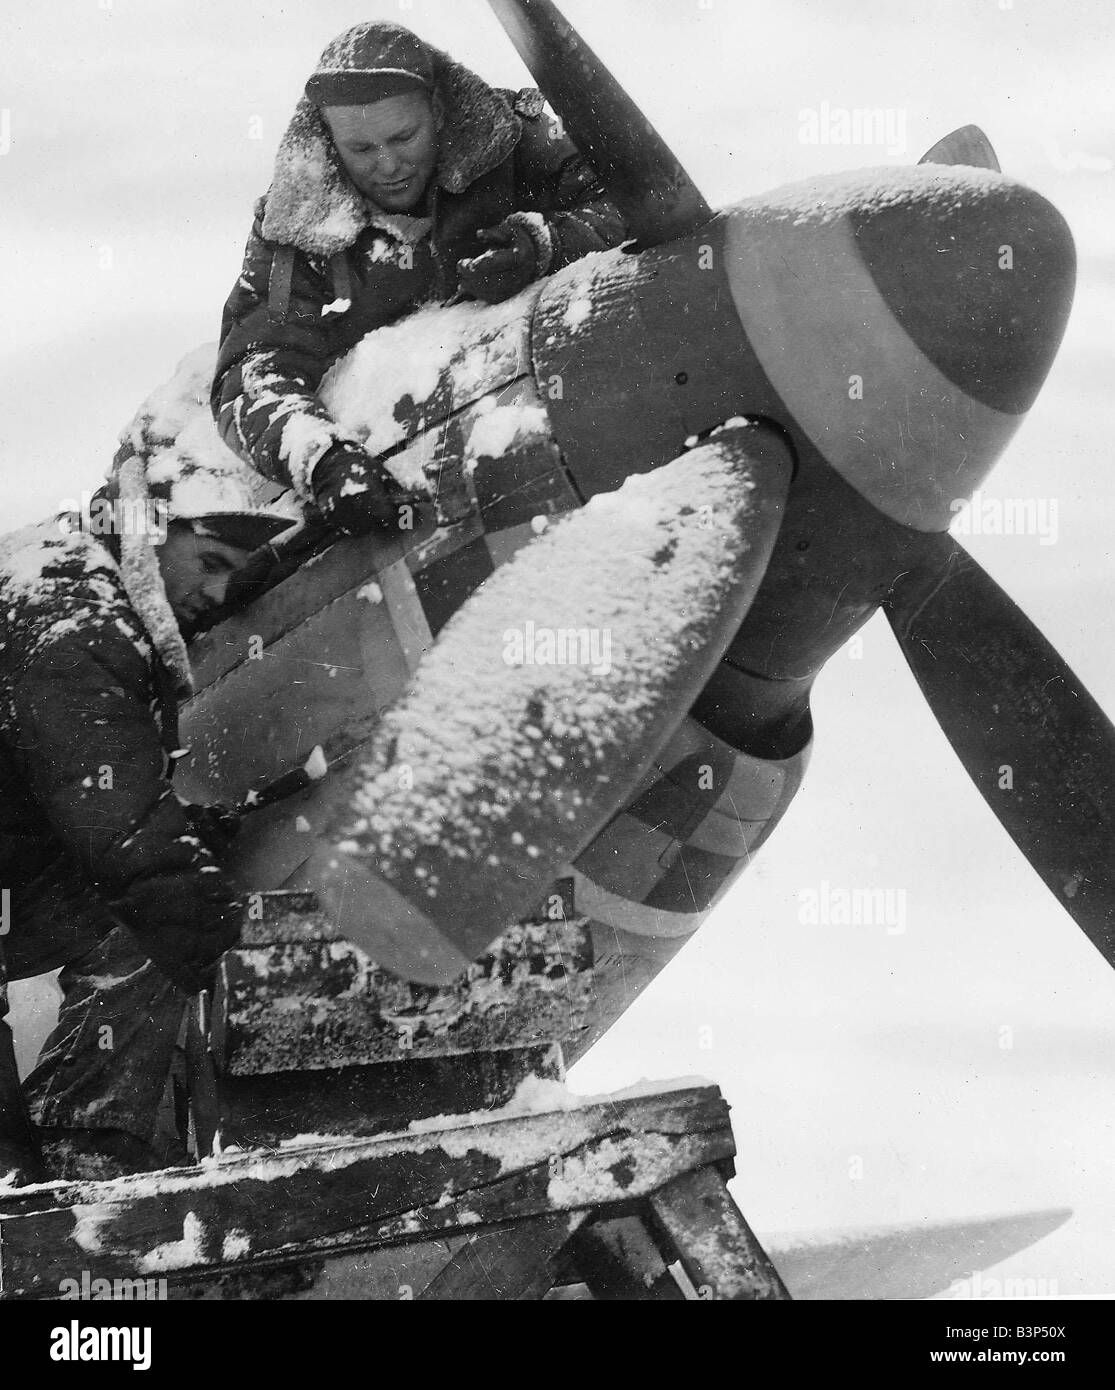 WW2 düster Wetterbedingungen tun wenig, um Flugzeugingenieuren davon abzuhalten, ihre Arbeit zu verfolgen Stockfoto